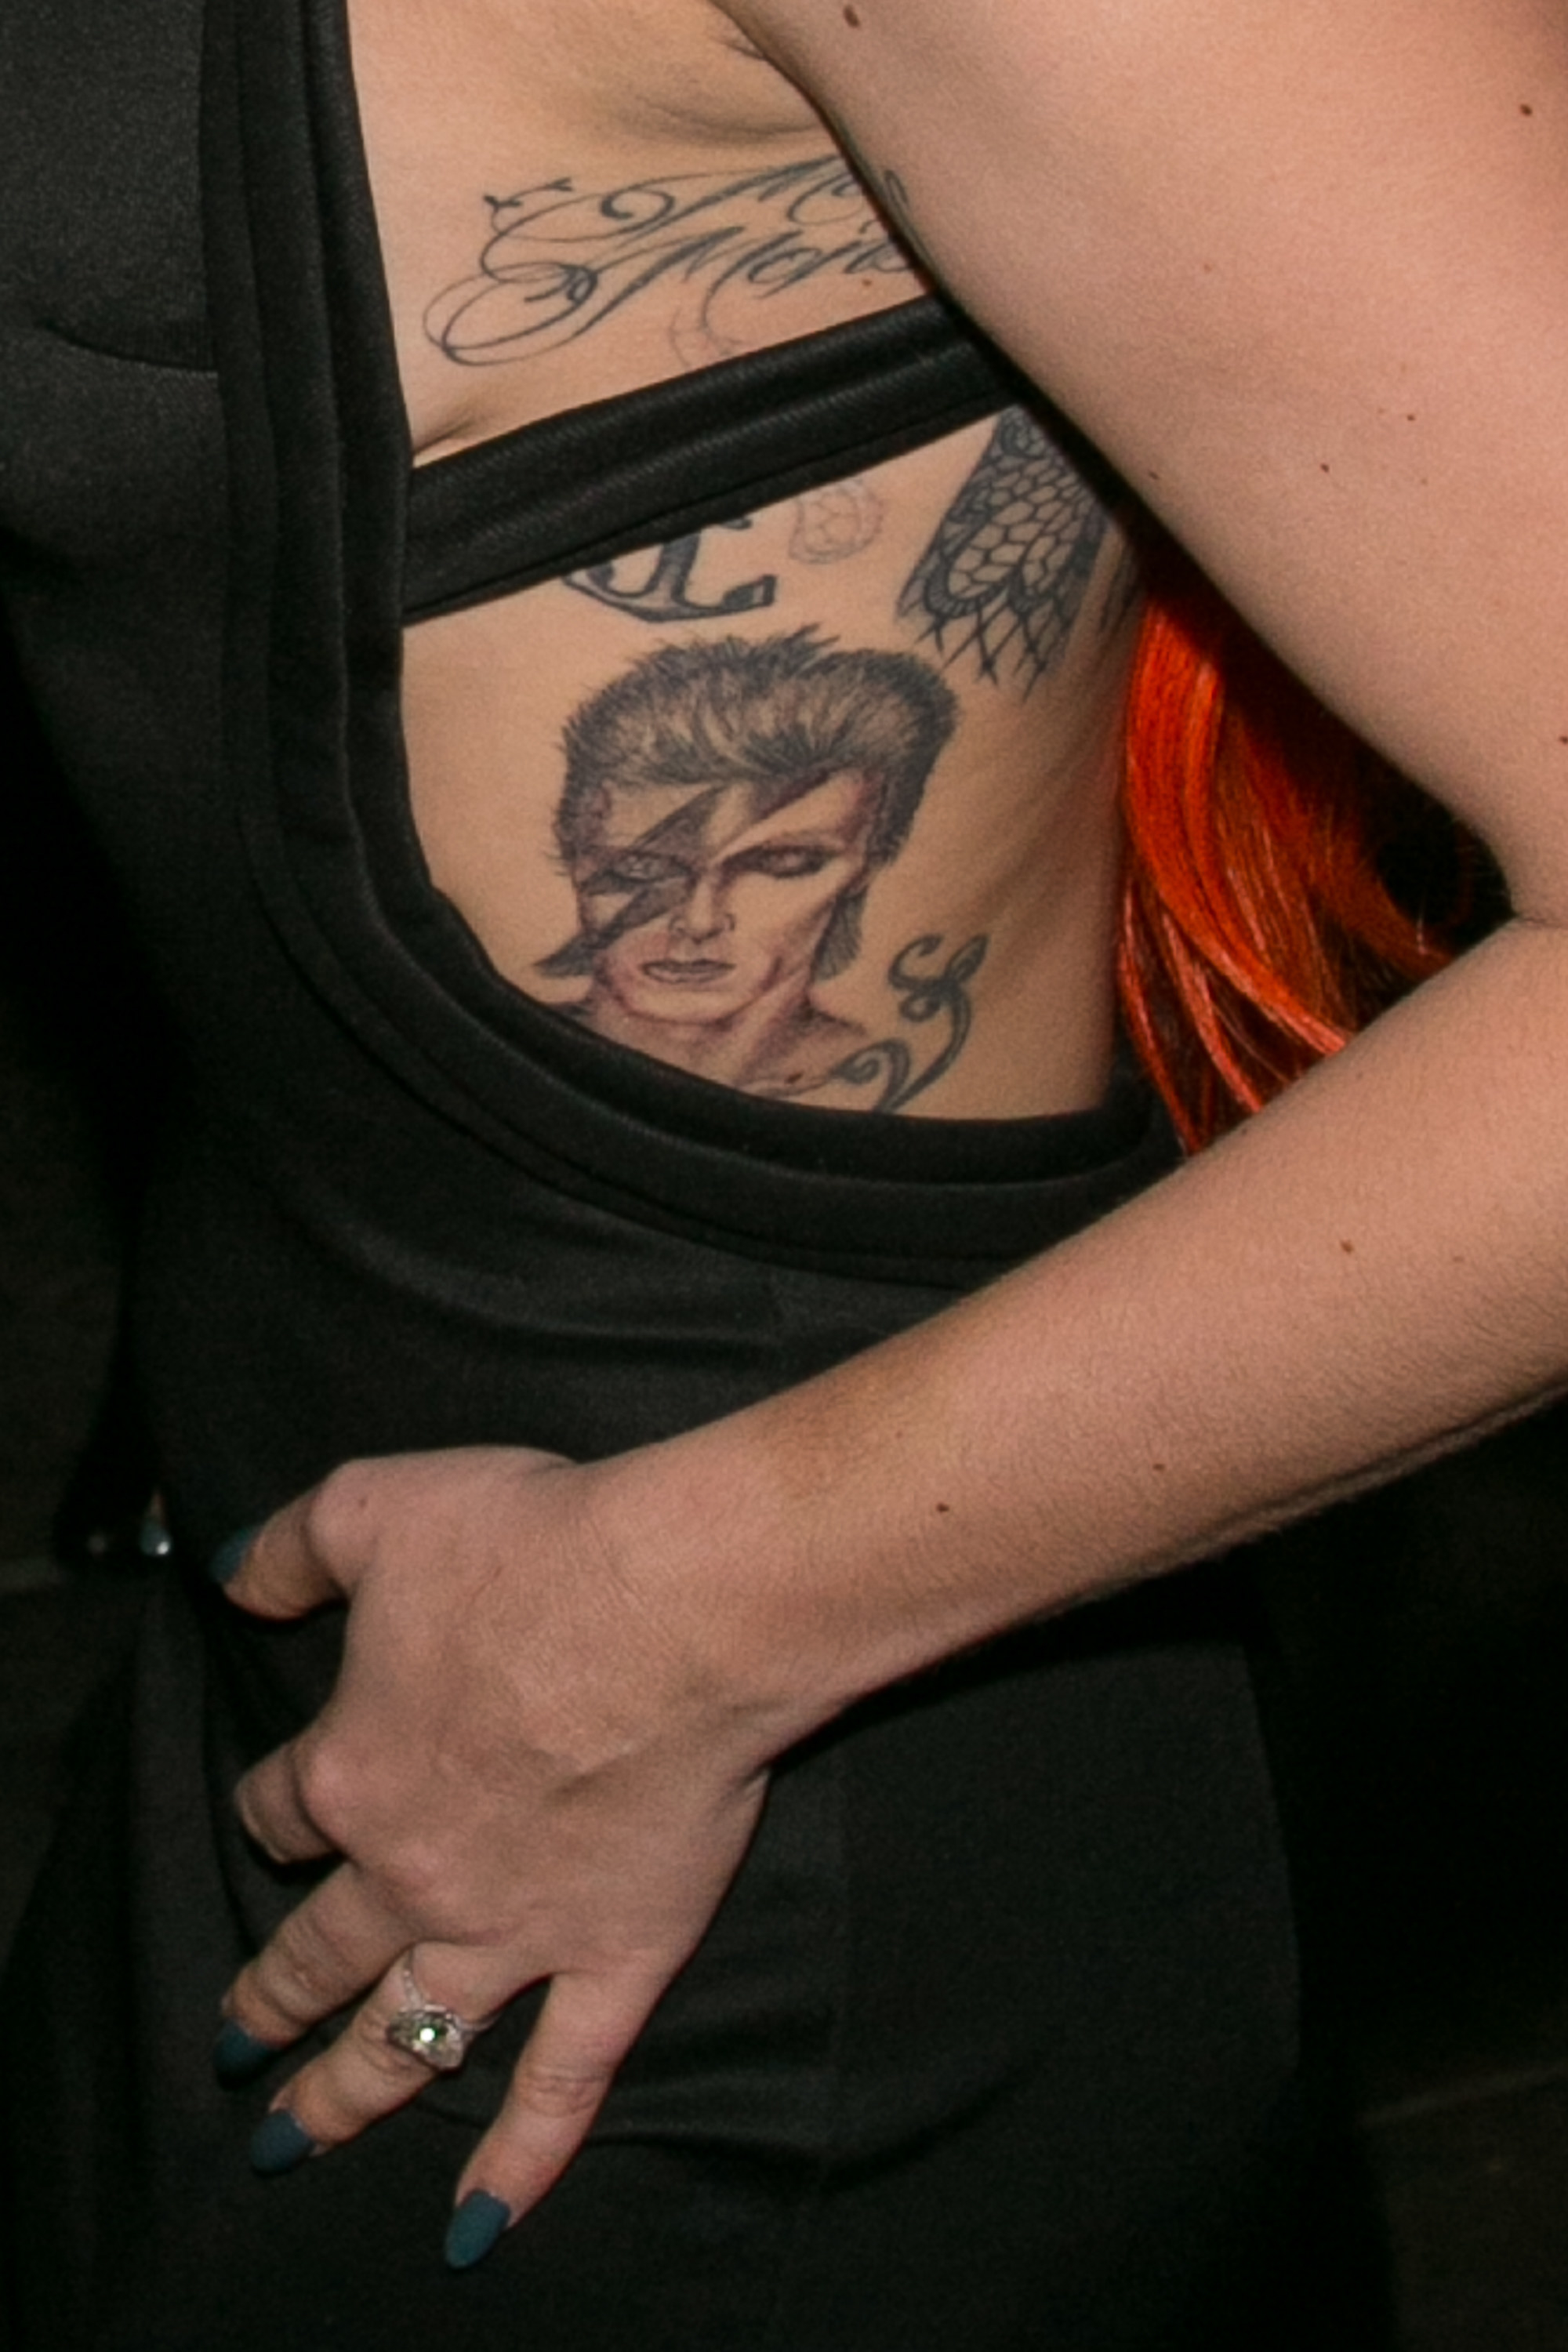 A David Bowie tattoo